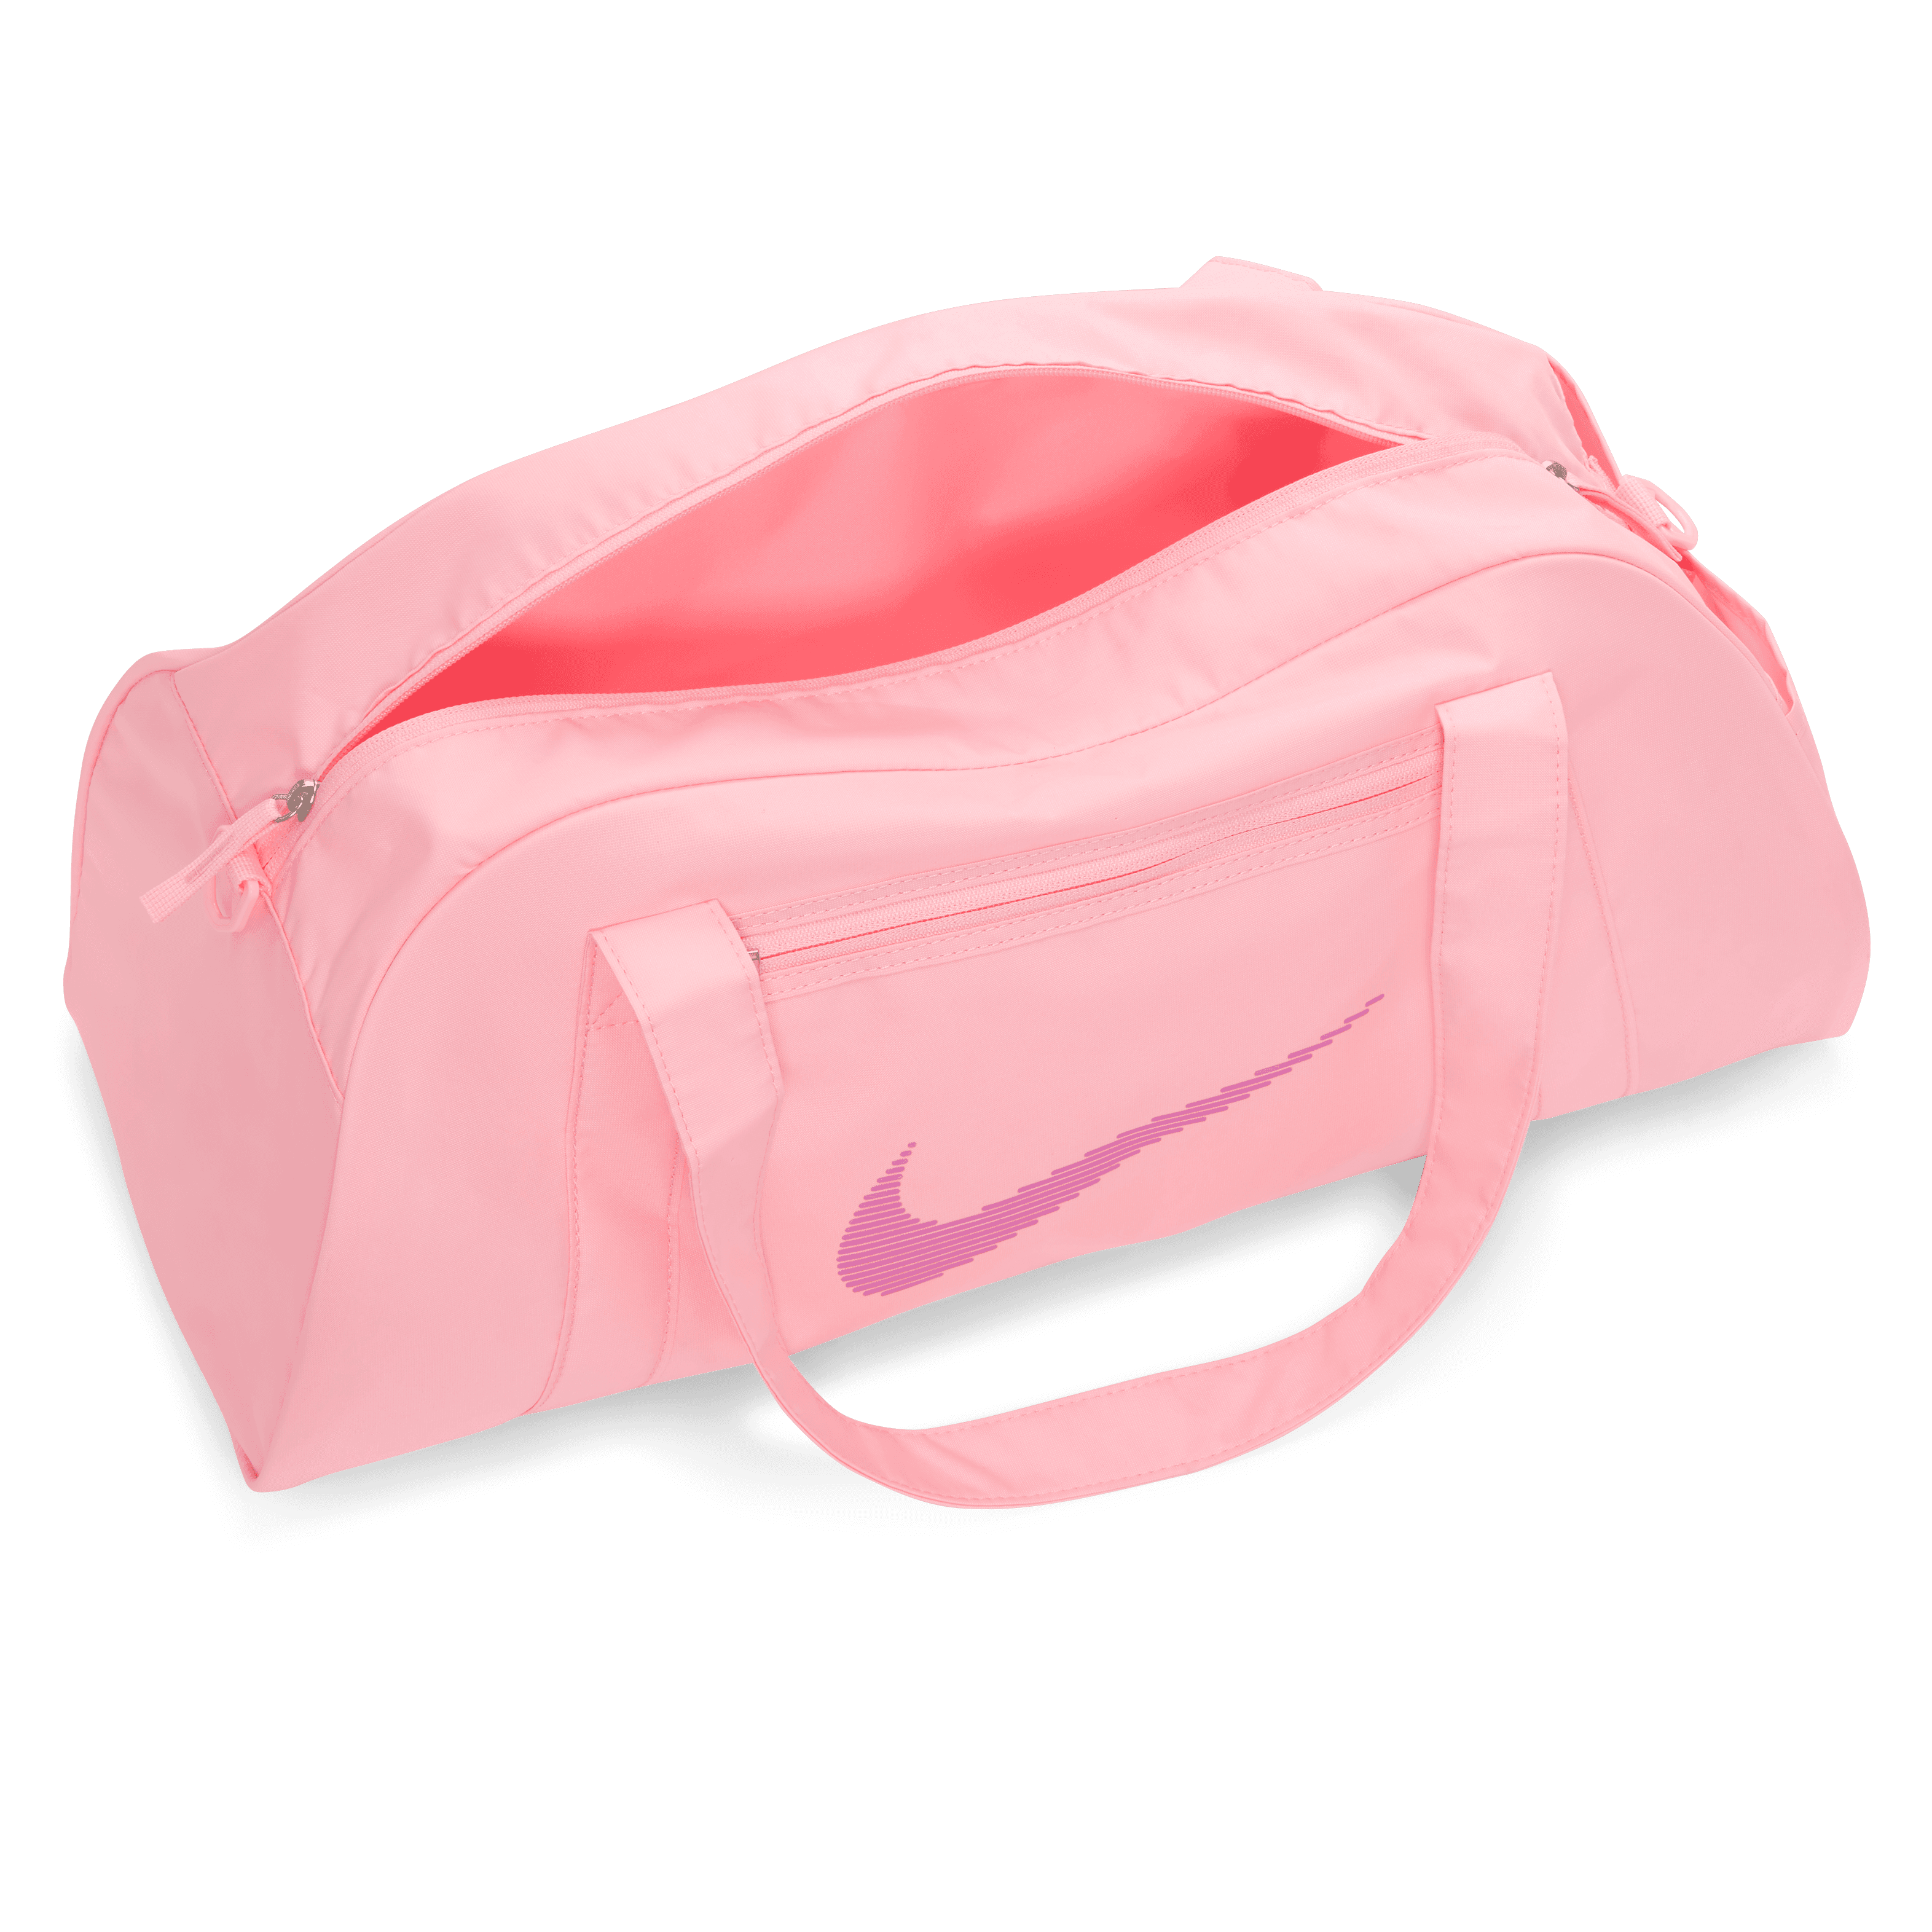 Stylish Pink Nike Backpack